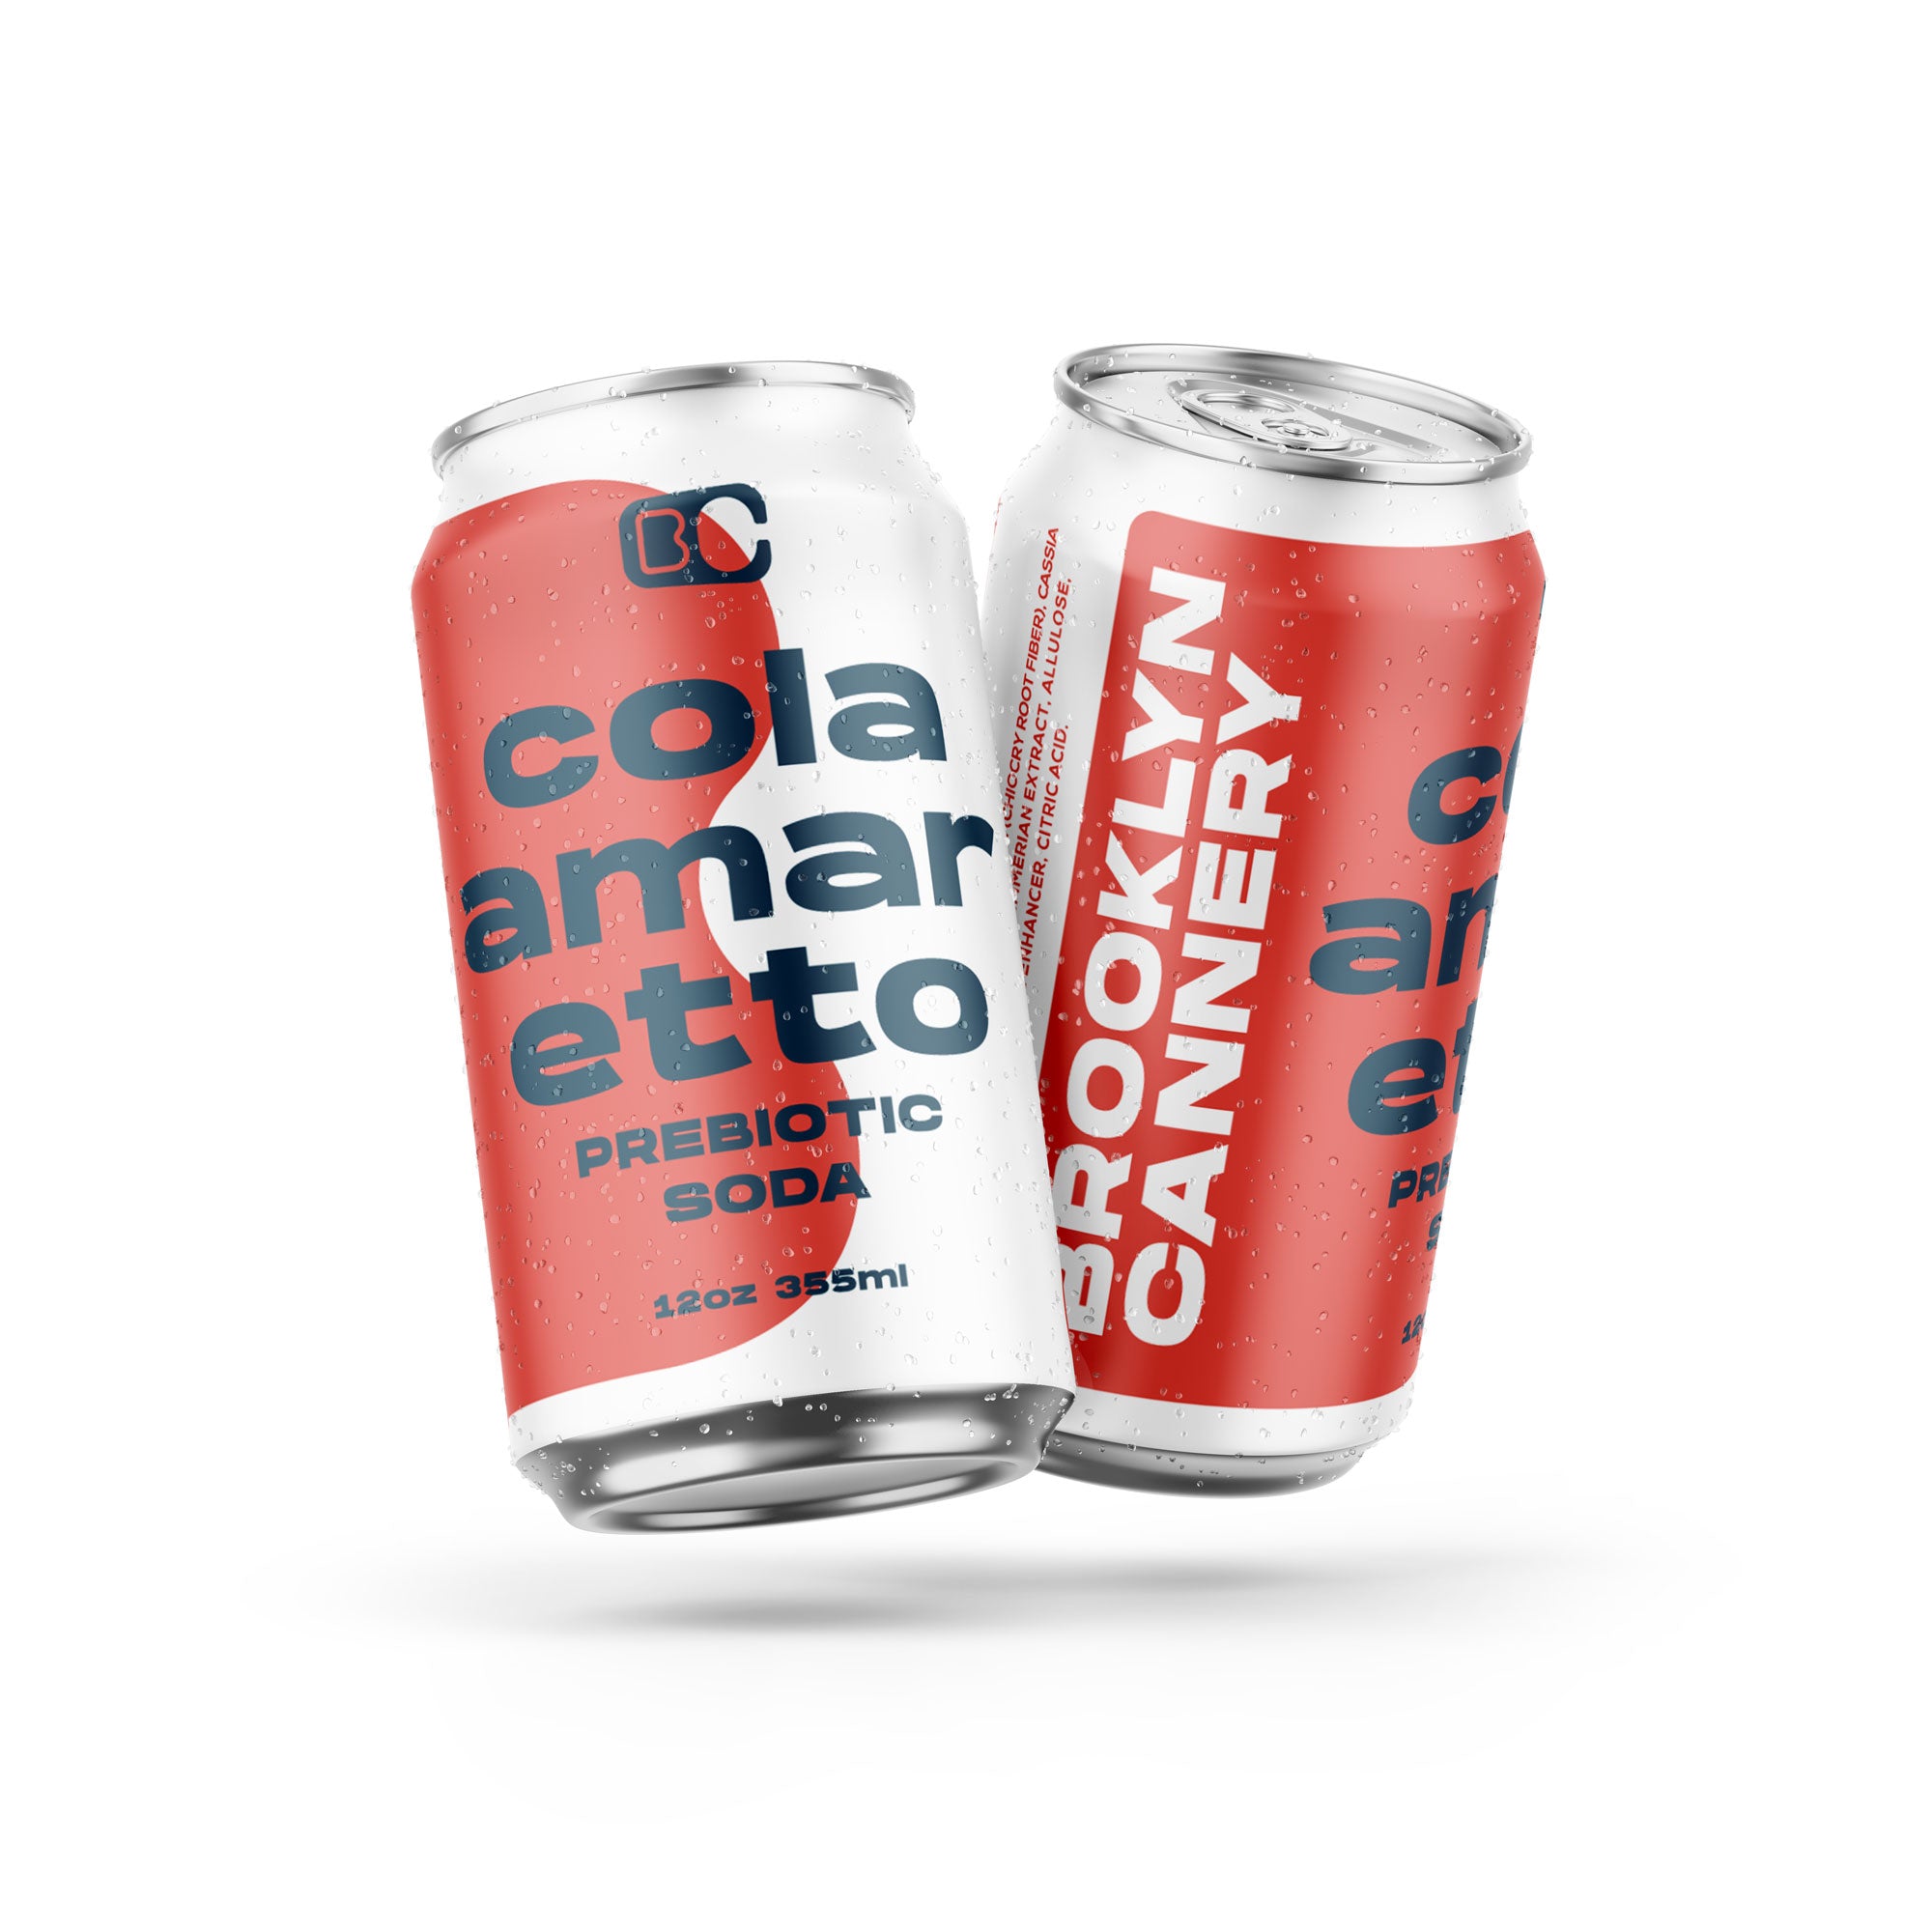 Cola Amaretto - 12 Pack